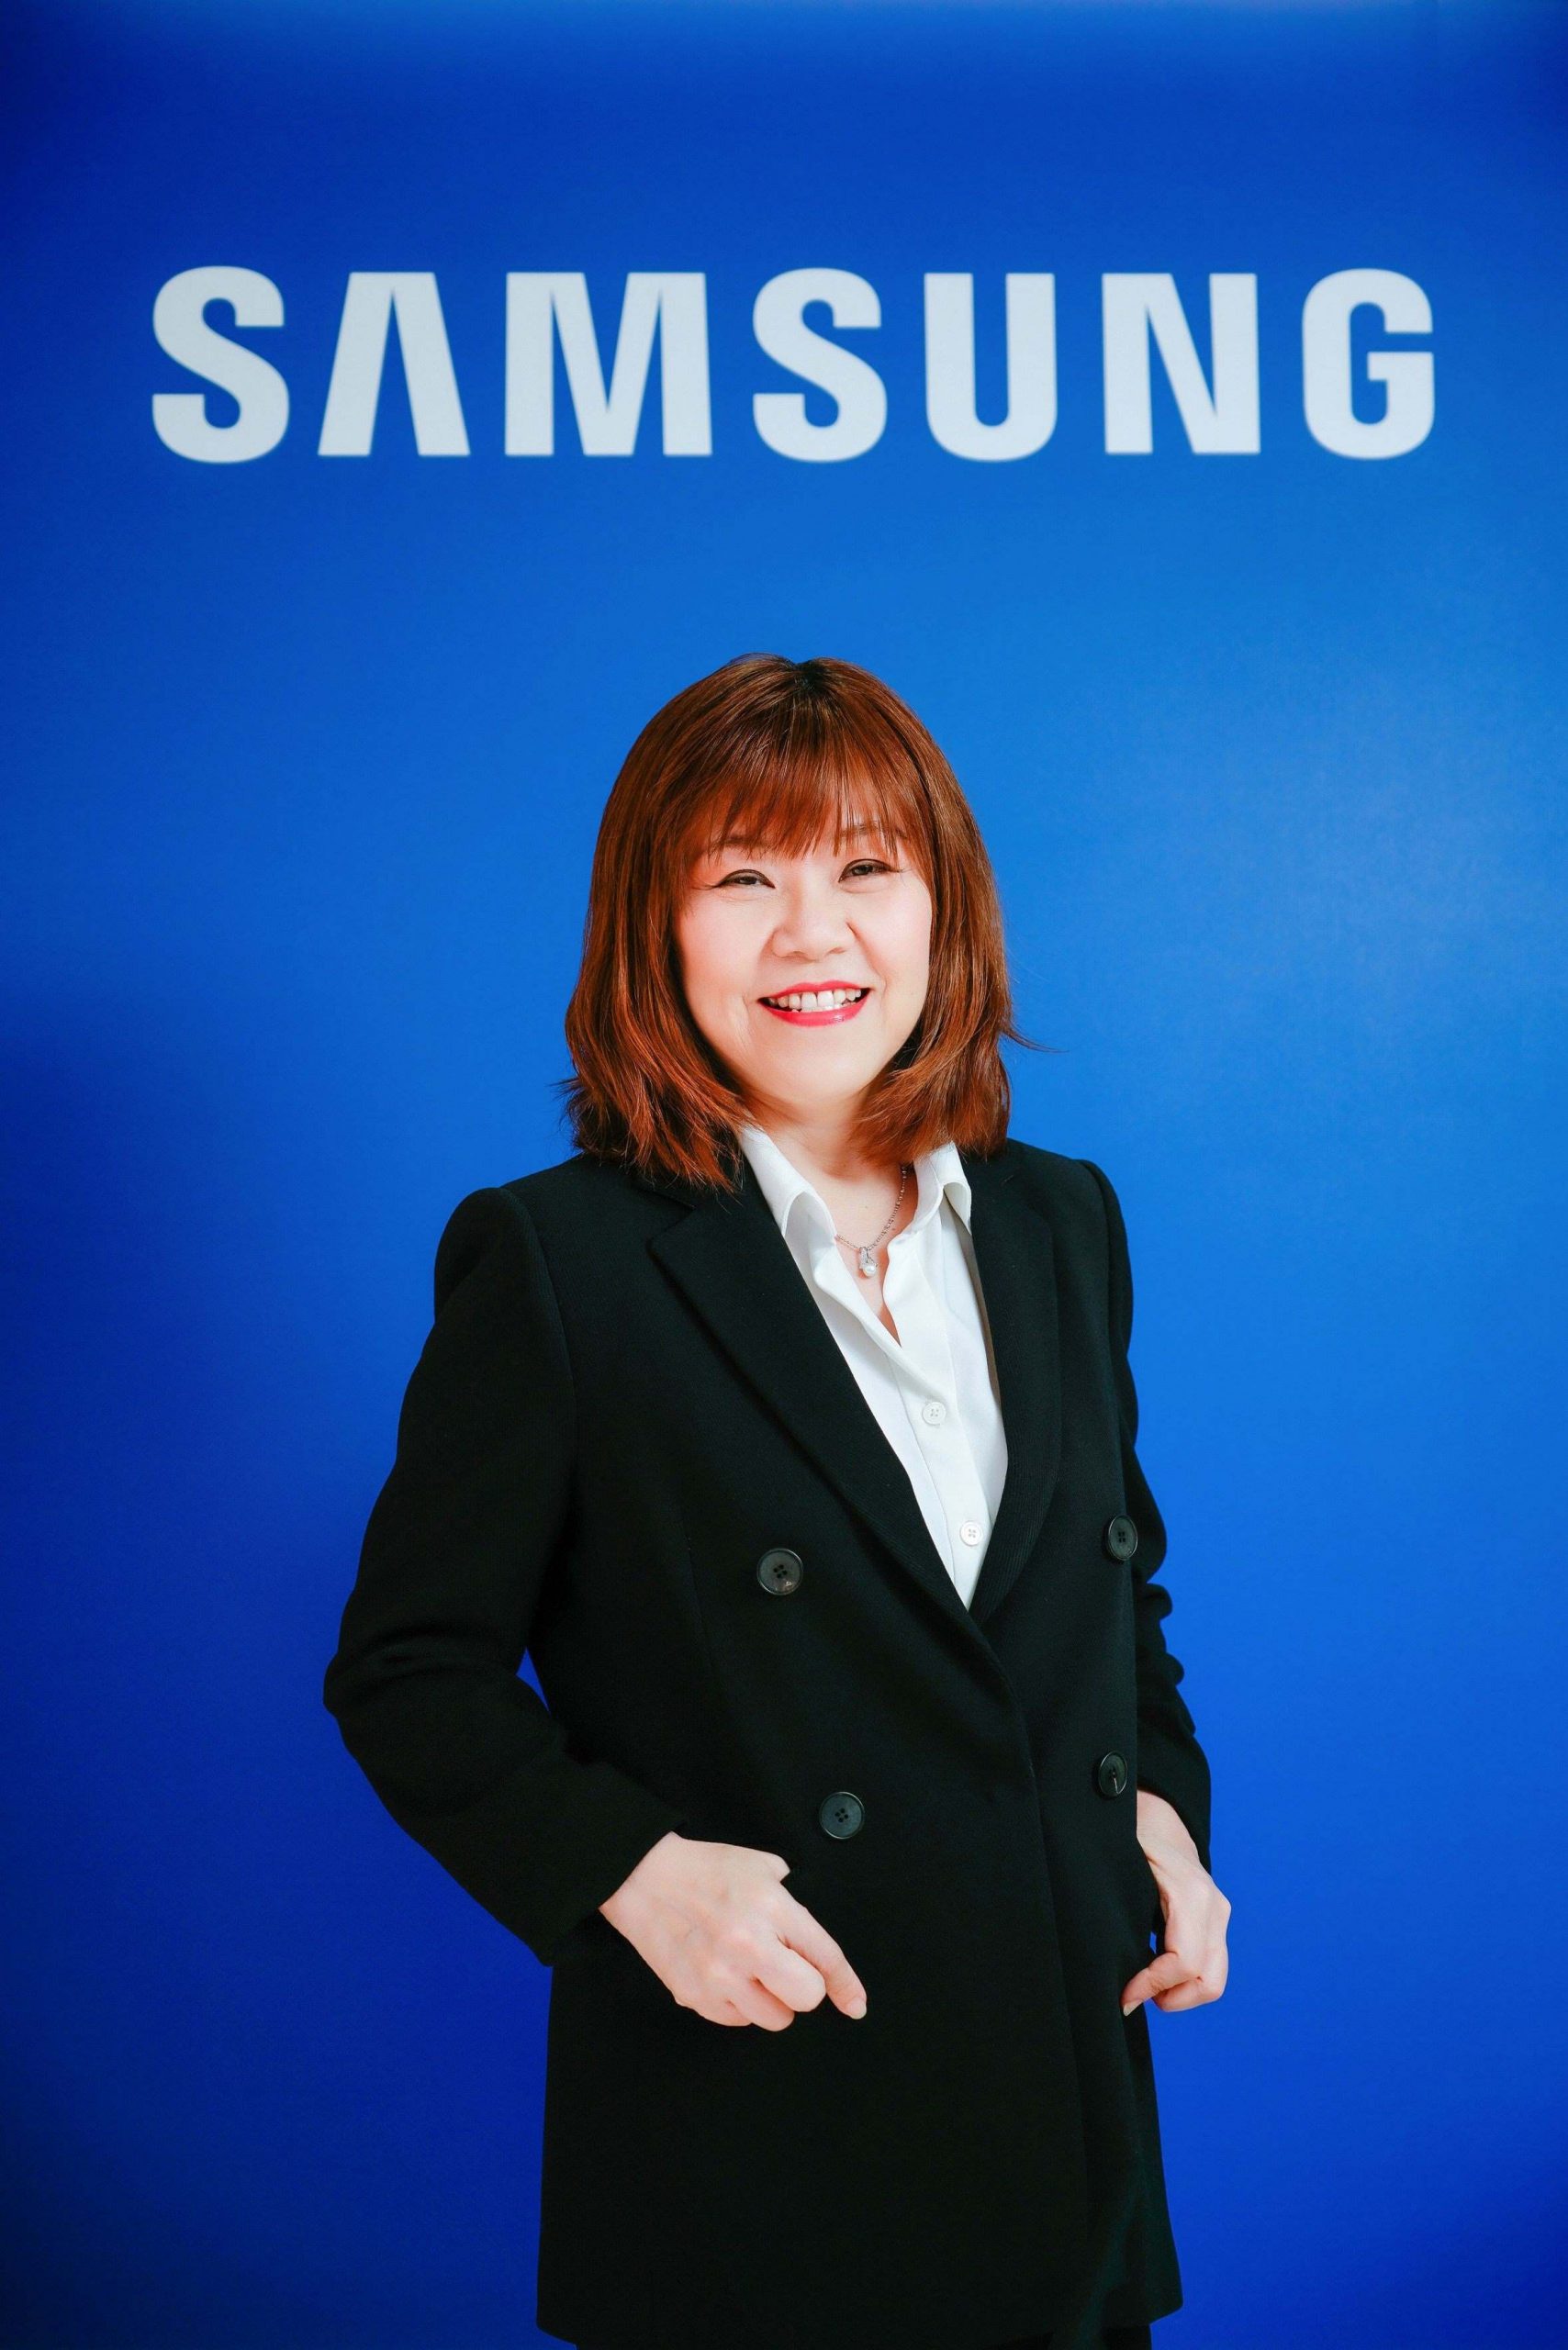 ???ซัมซุงลุยสอนโค้ดดิ้งผ่านโครงการ Samsung Innovation Campus เสริมพลังเด็กไทย ชูออนไลน์แพลตฟอร์ม รับสถานการณ์ปัจจุบัน